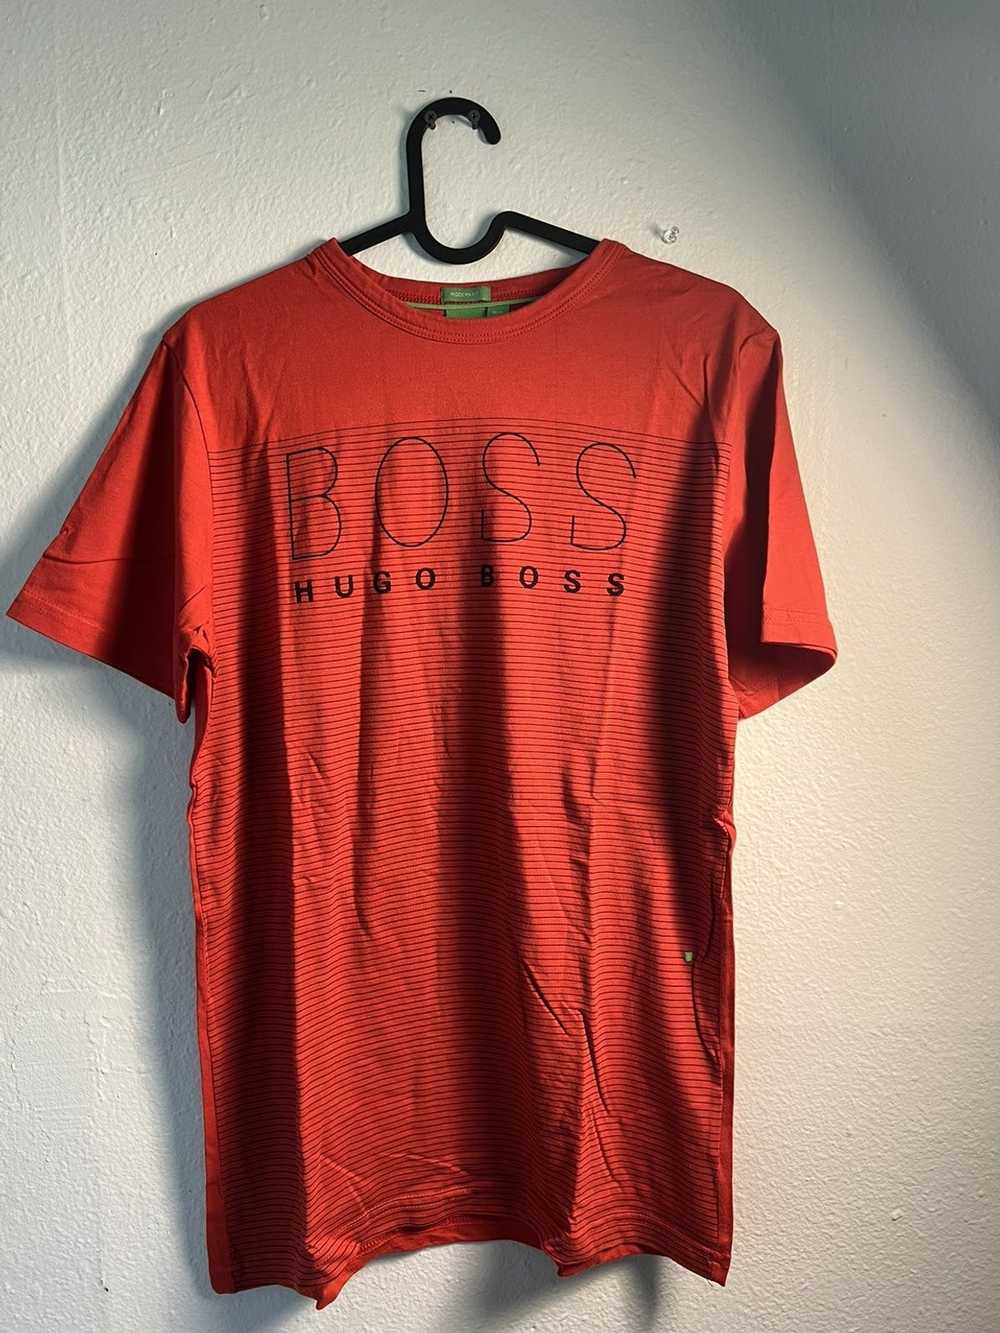 Gemrock Boss T-Shirt